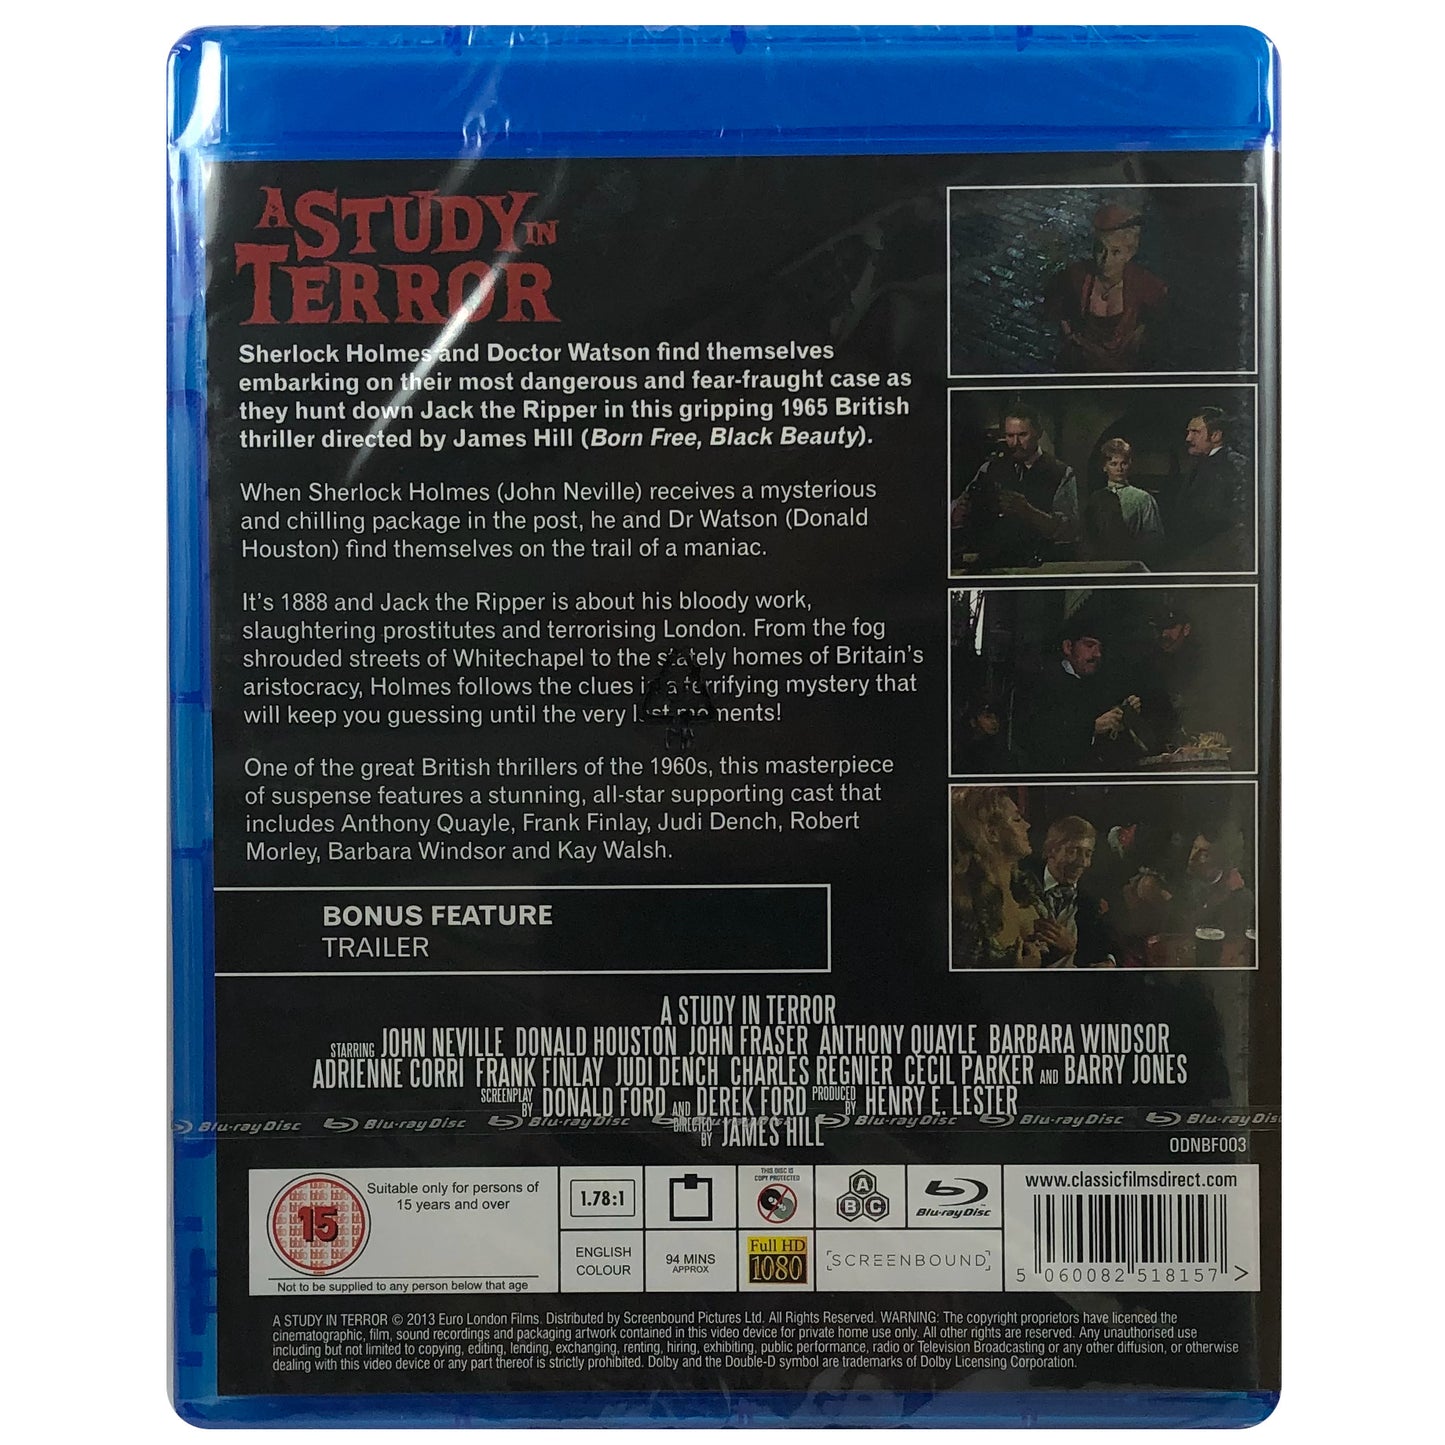 A Study in Terror Blu-Ray